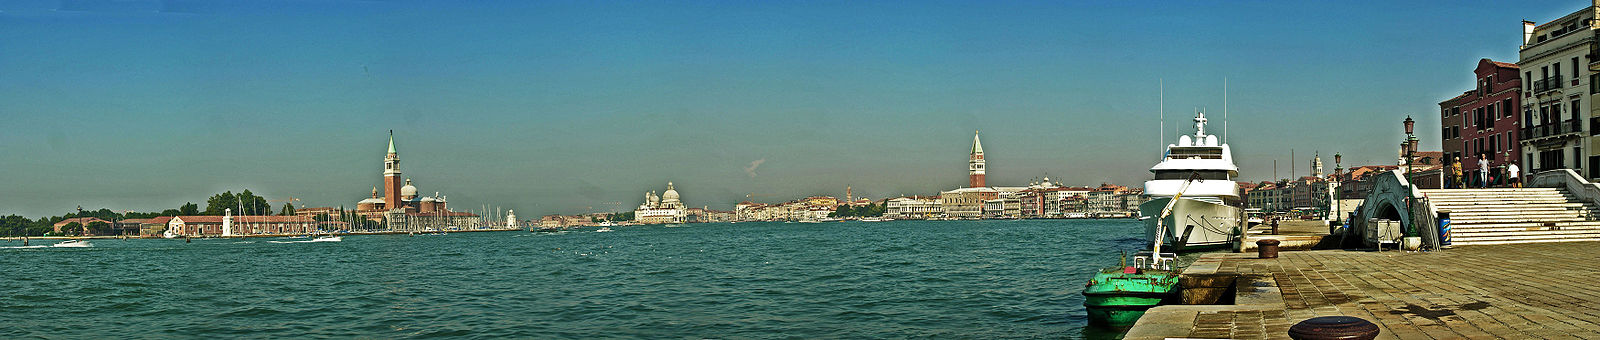 Venedig panorama.jpg